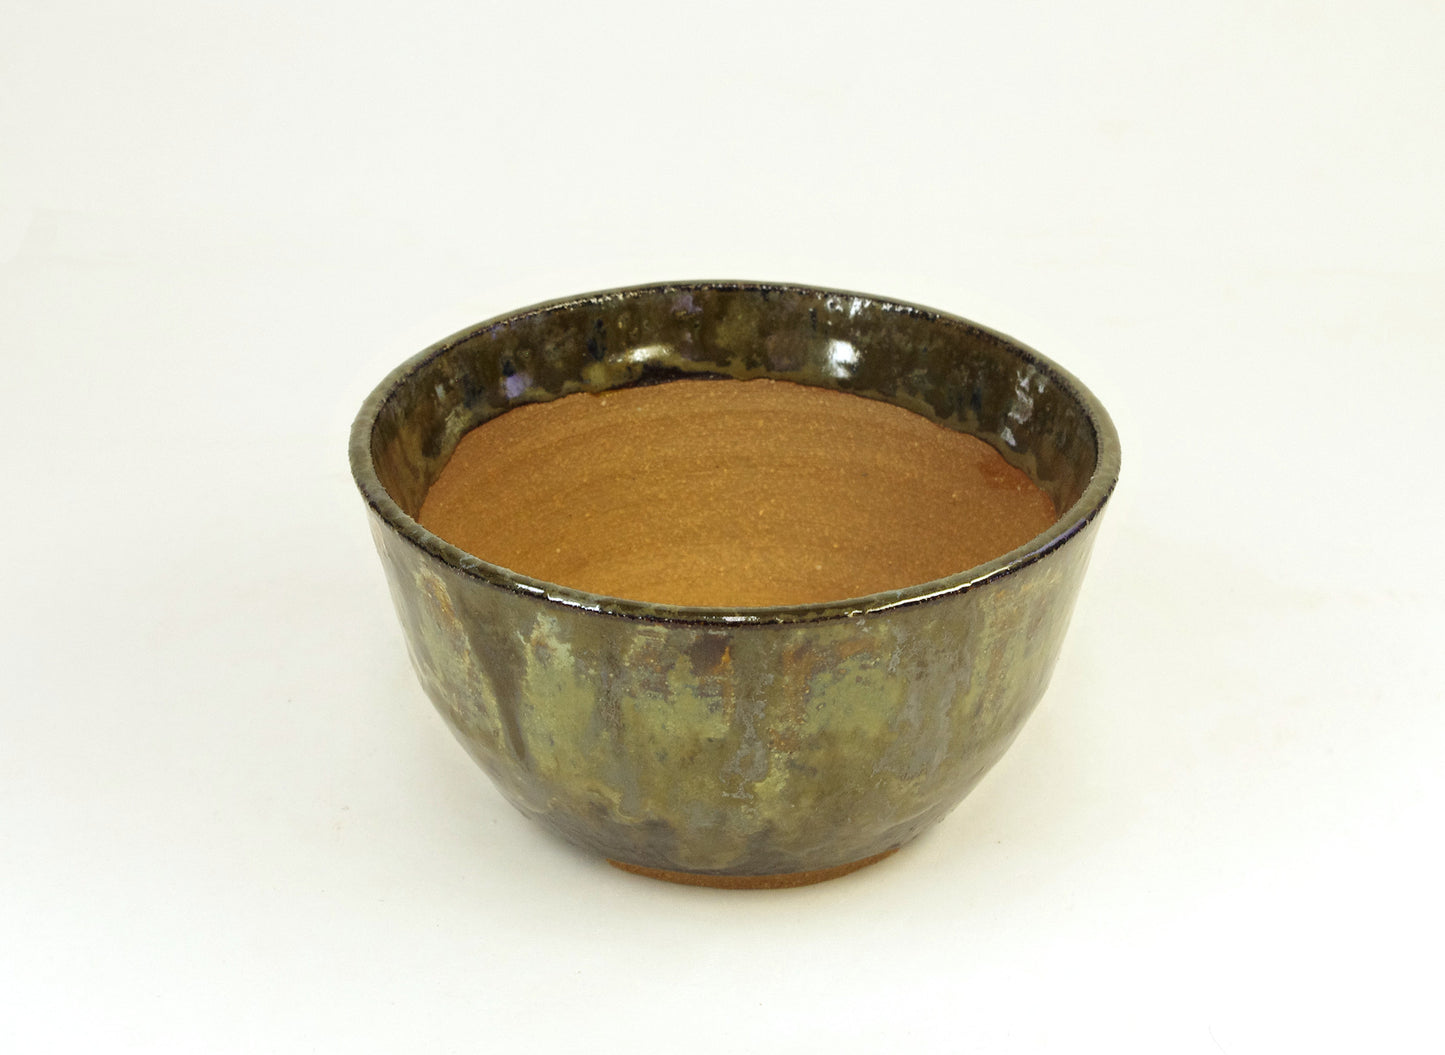 2133 Hand Thrown Bonsai Pot, Stoneware, Greens, Browns, 4 1/2 x 2 3/8